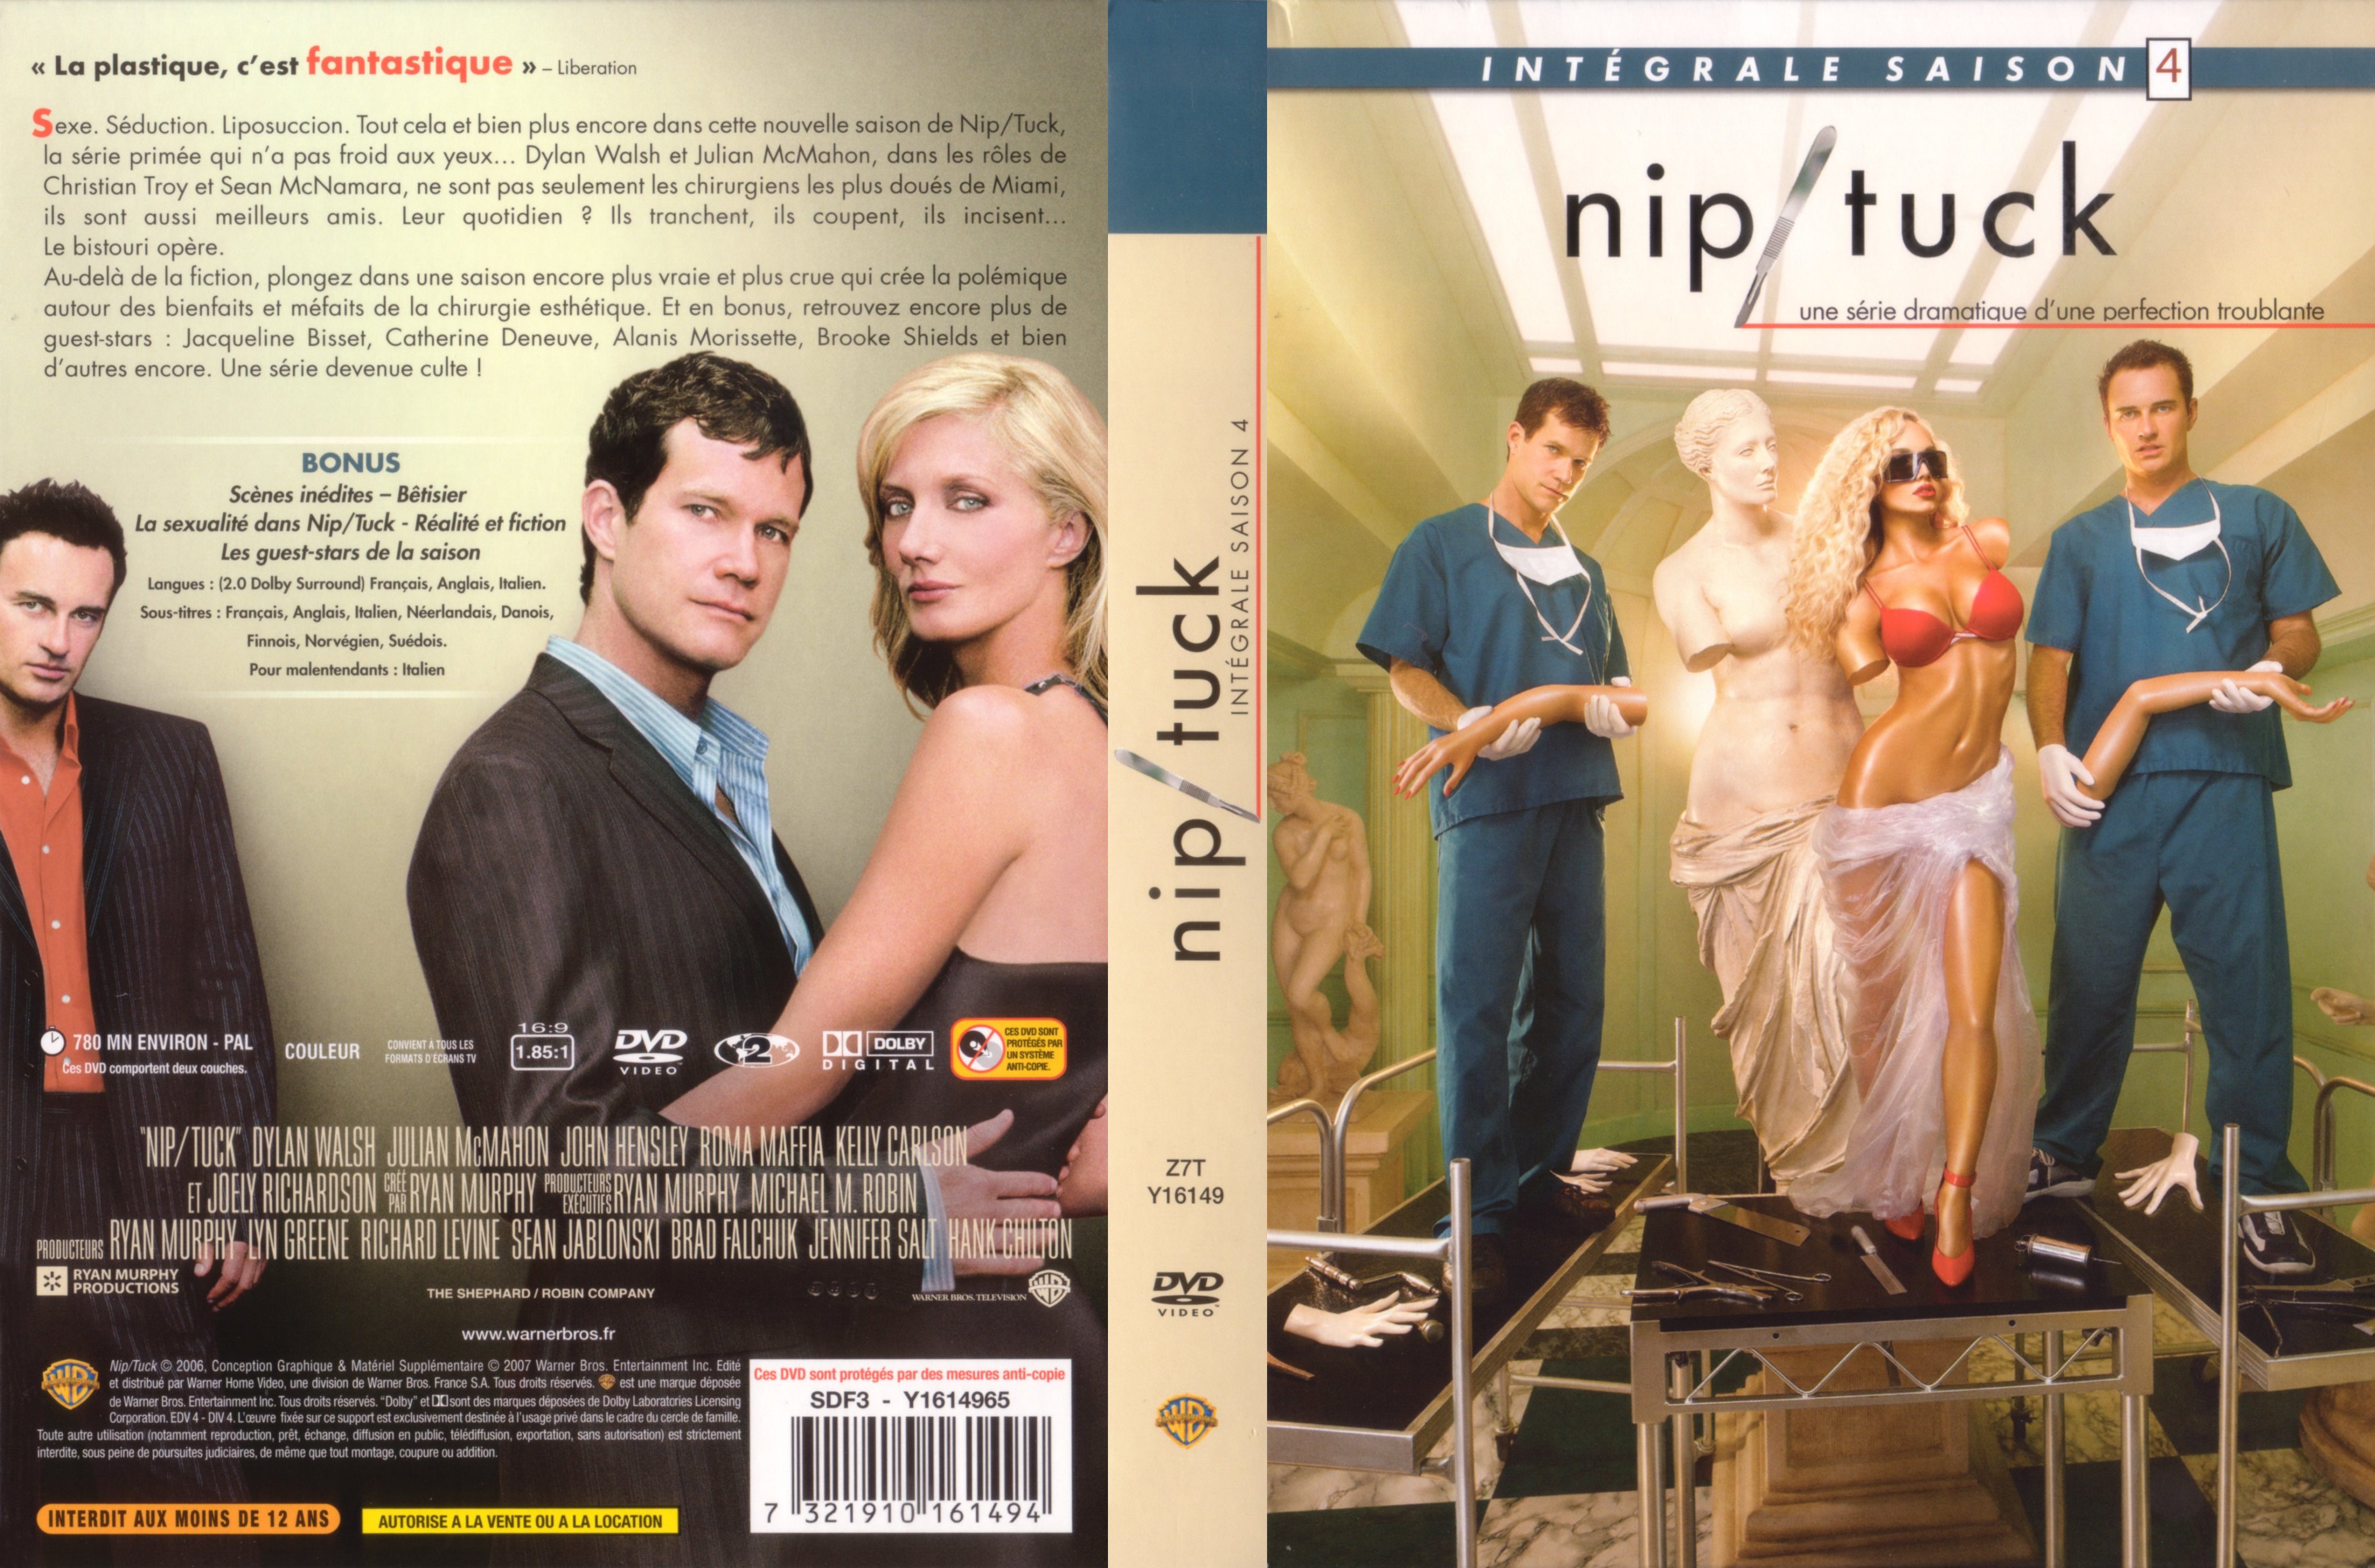 Jaquette DVD Nip-Tuck saison 4 COFFRET